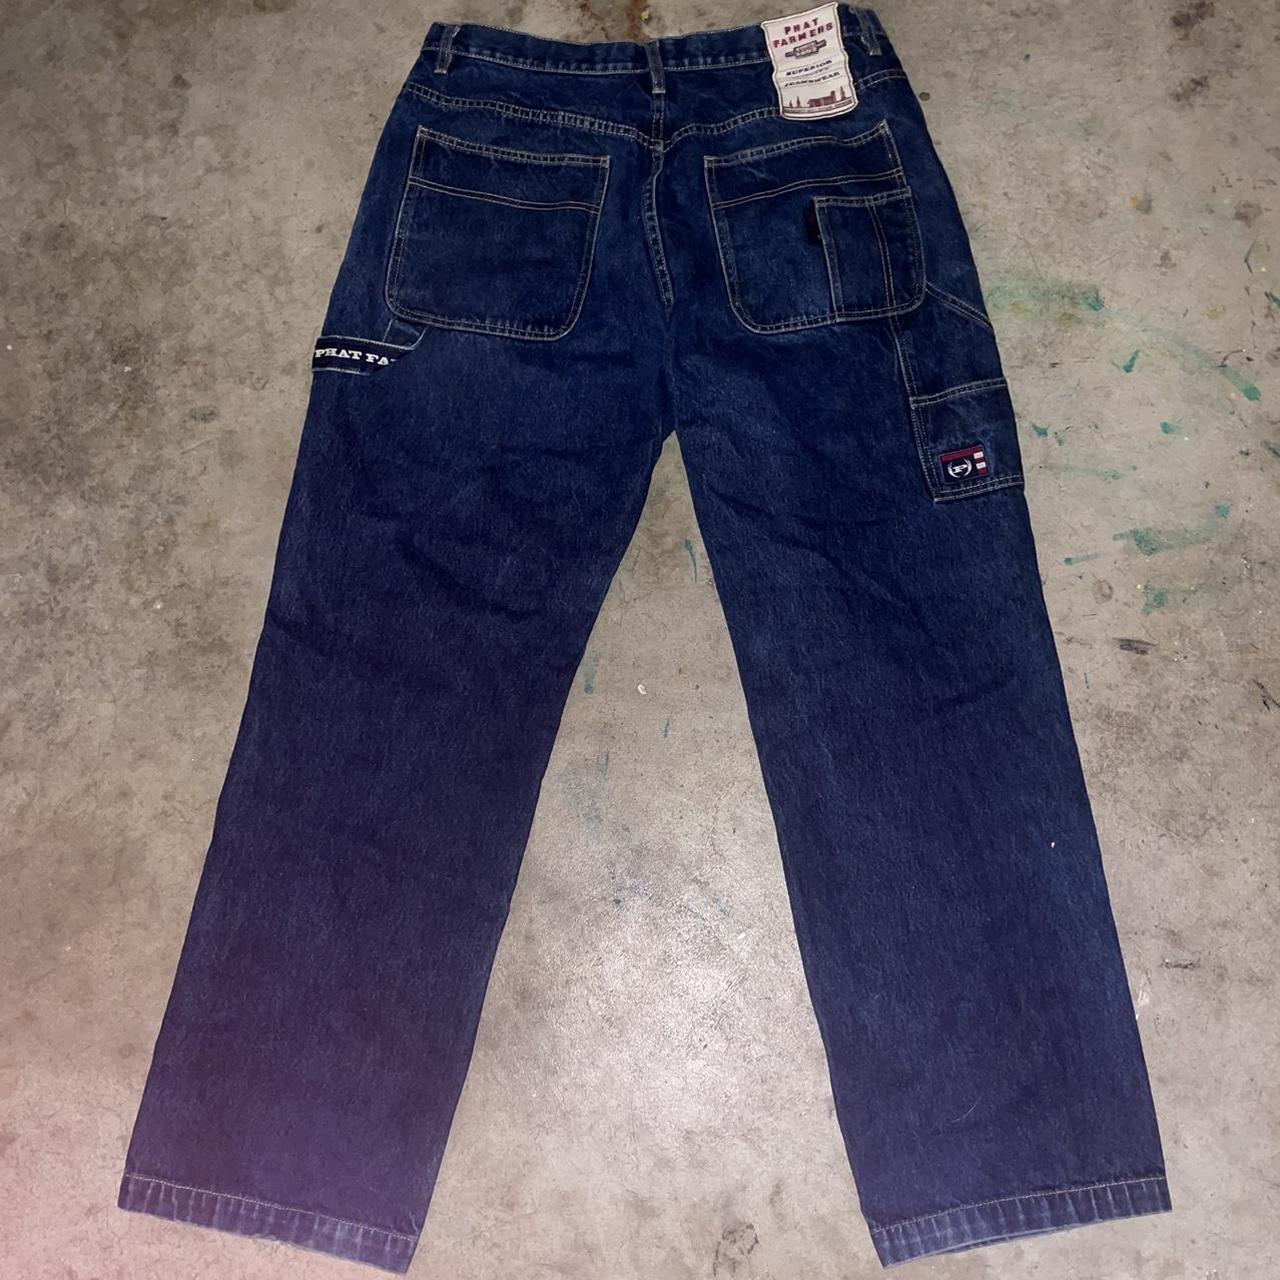 90s Phat Farm baggy carpenter jeans. Wide leg &... - Depop